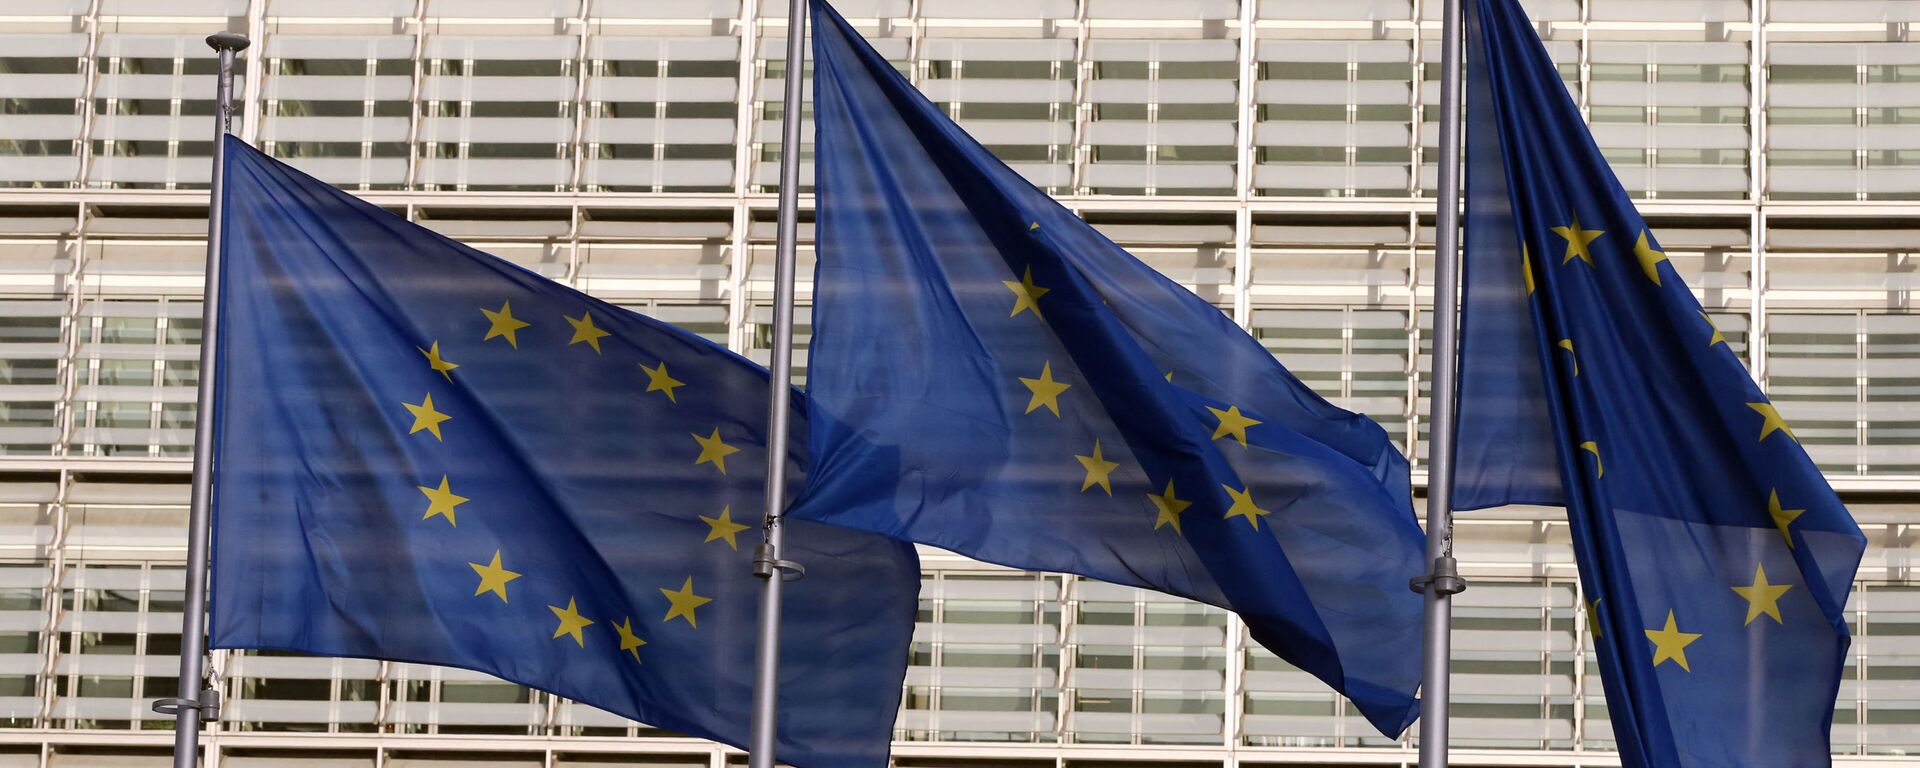 Флаги Европейского союза у штаб-квартиры Европейской комиссии в Брюсселе - Sputnik Литва, 1920, 14.05.2021